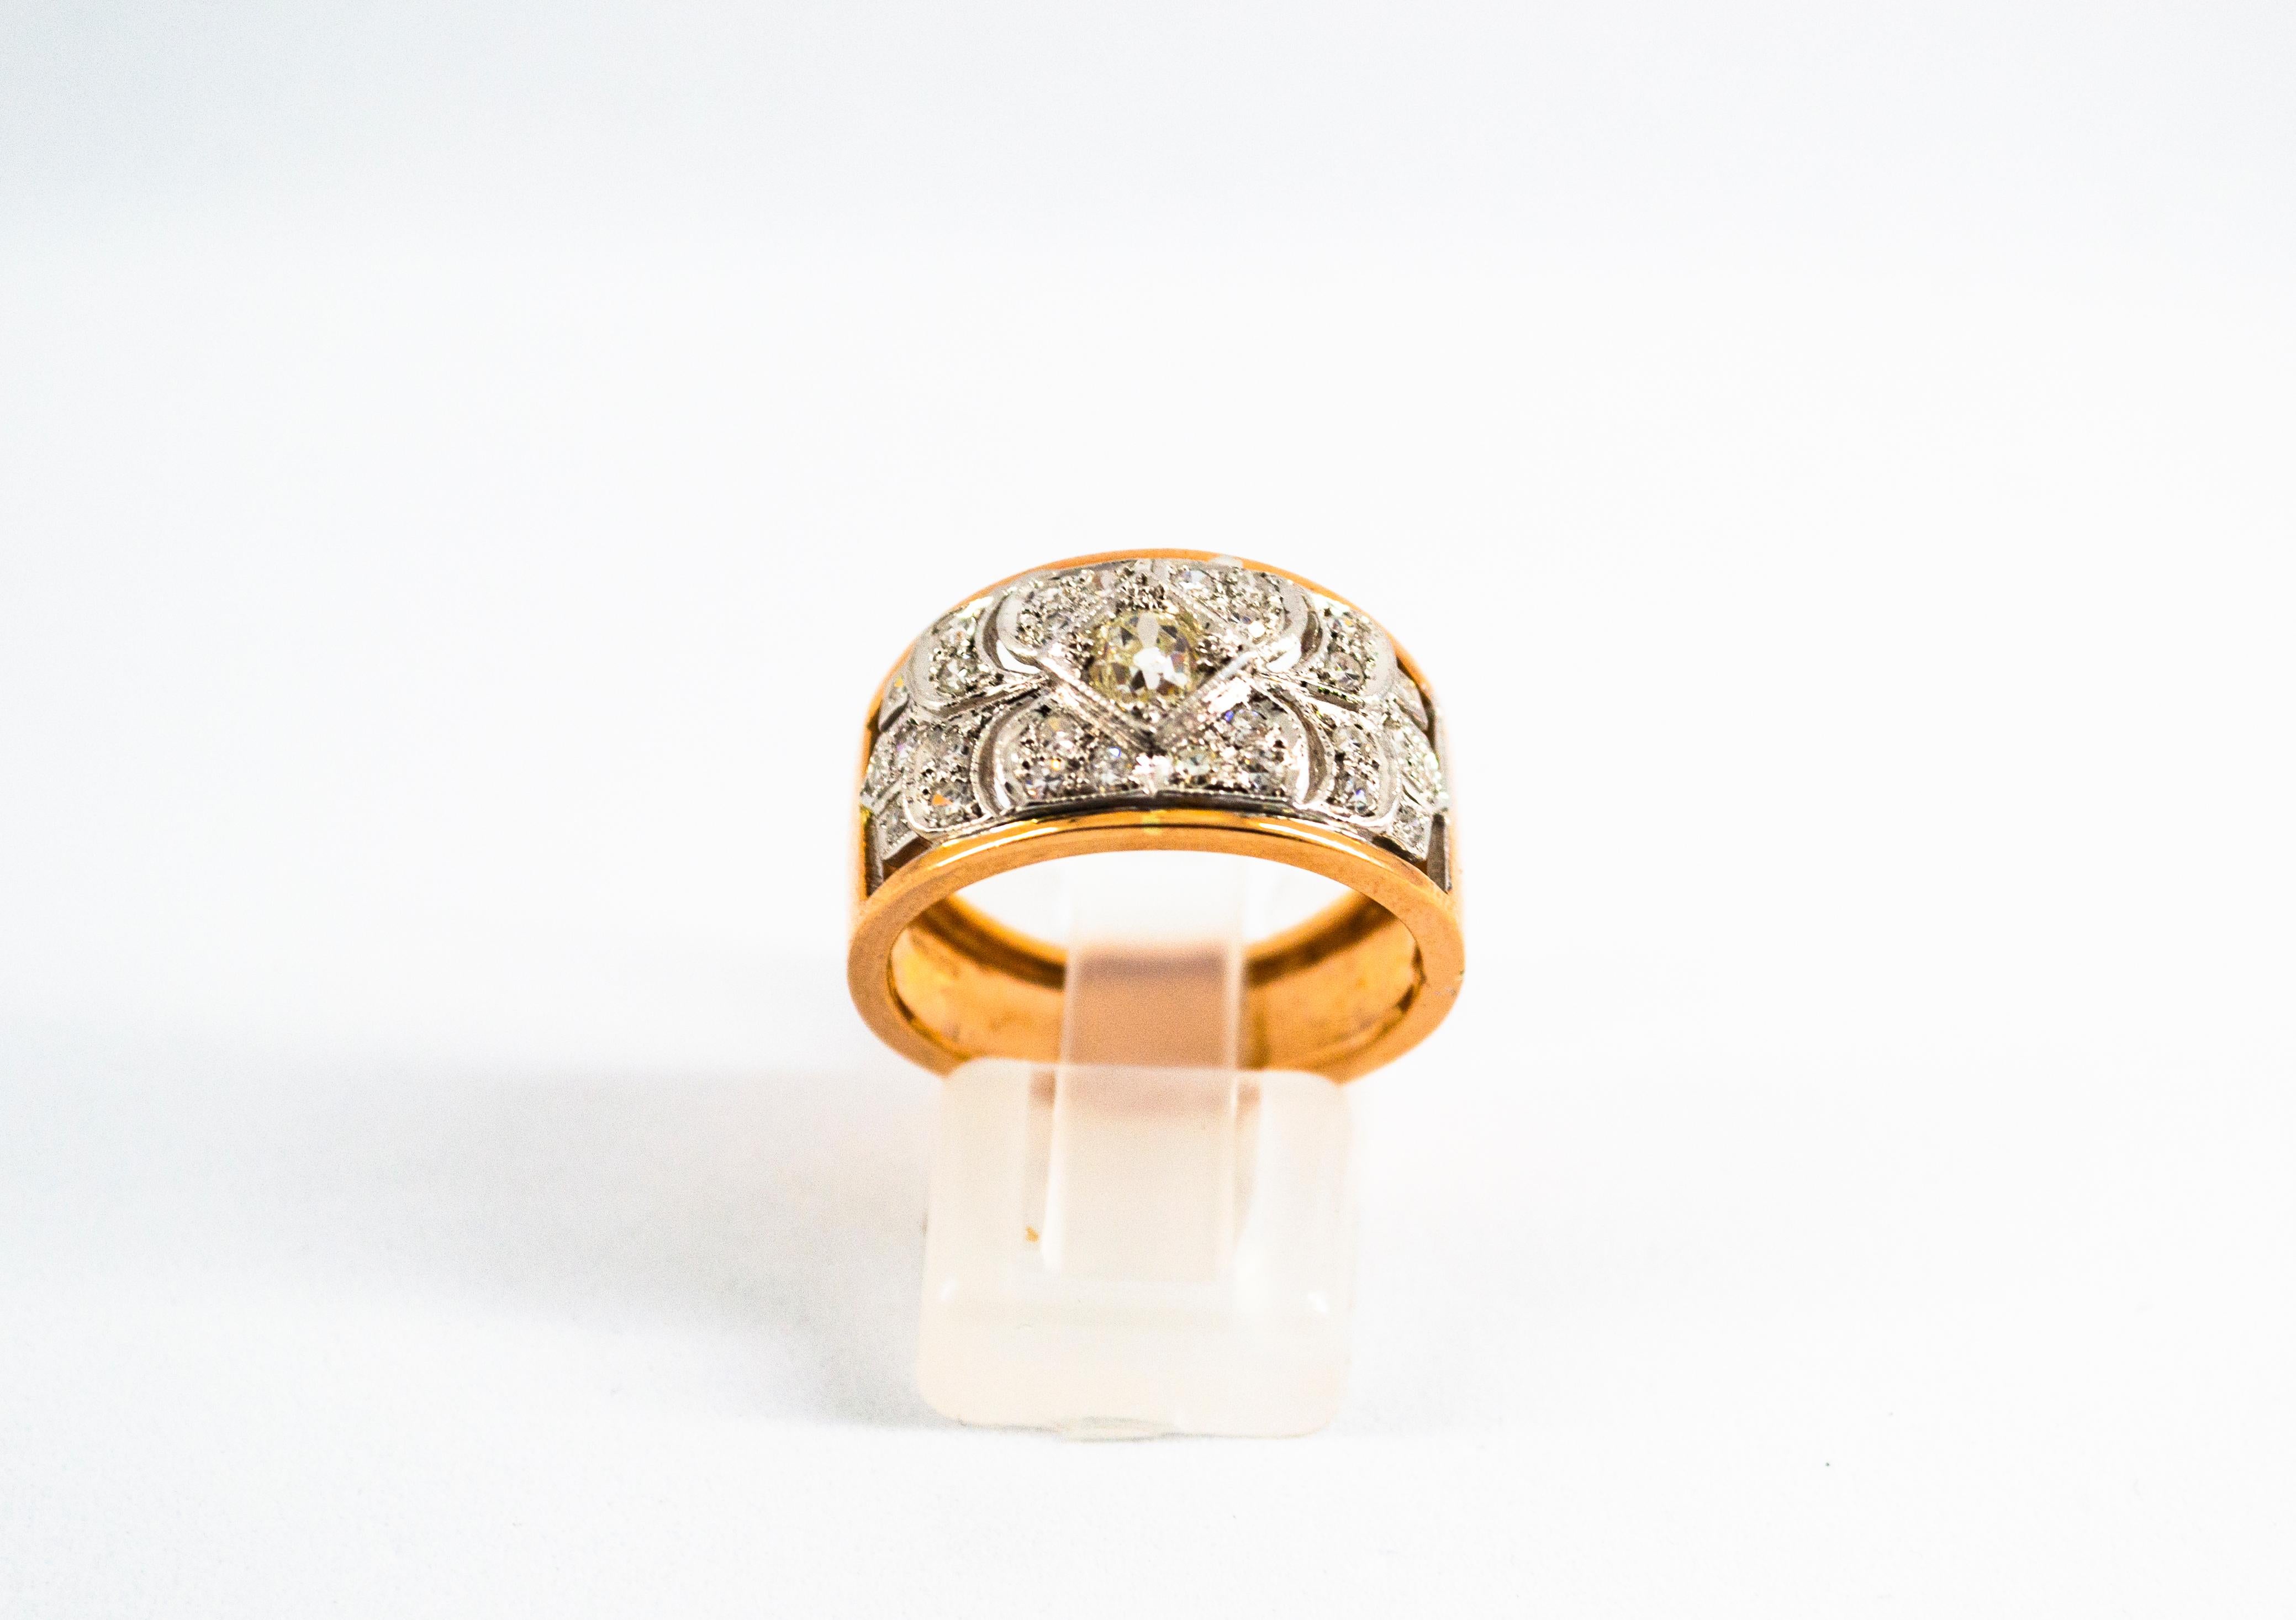 Dieser Ring ist aus 14K Gelbgold gefertigt.
Dieser Ring hat 0,65 Karat weiße Diamanten.
Größe ITA: 15 USA: 7
Da wir eine Werkstatt sind, ist jedes Stück handgefertigt, anpassbar und in der Größe veränderbar.